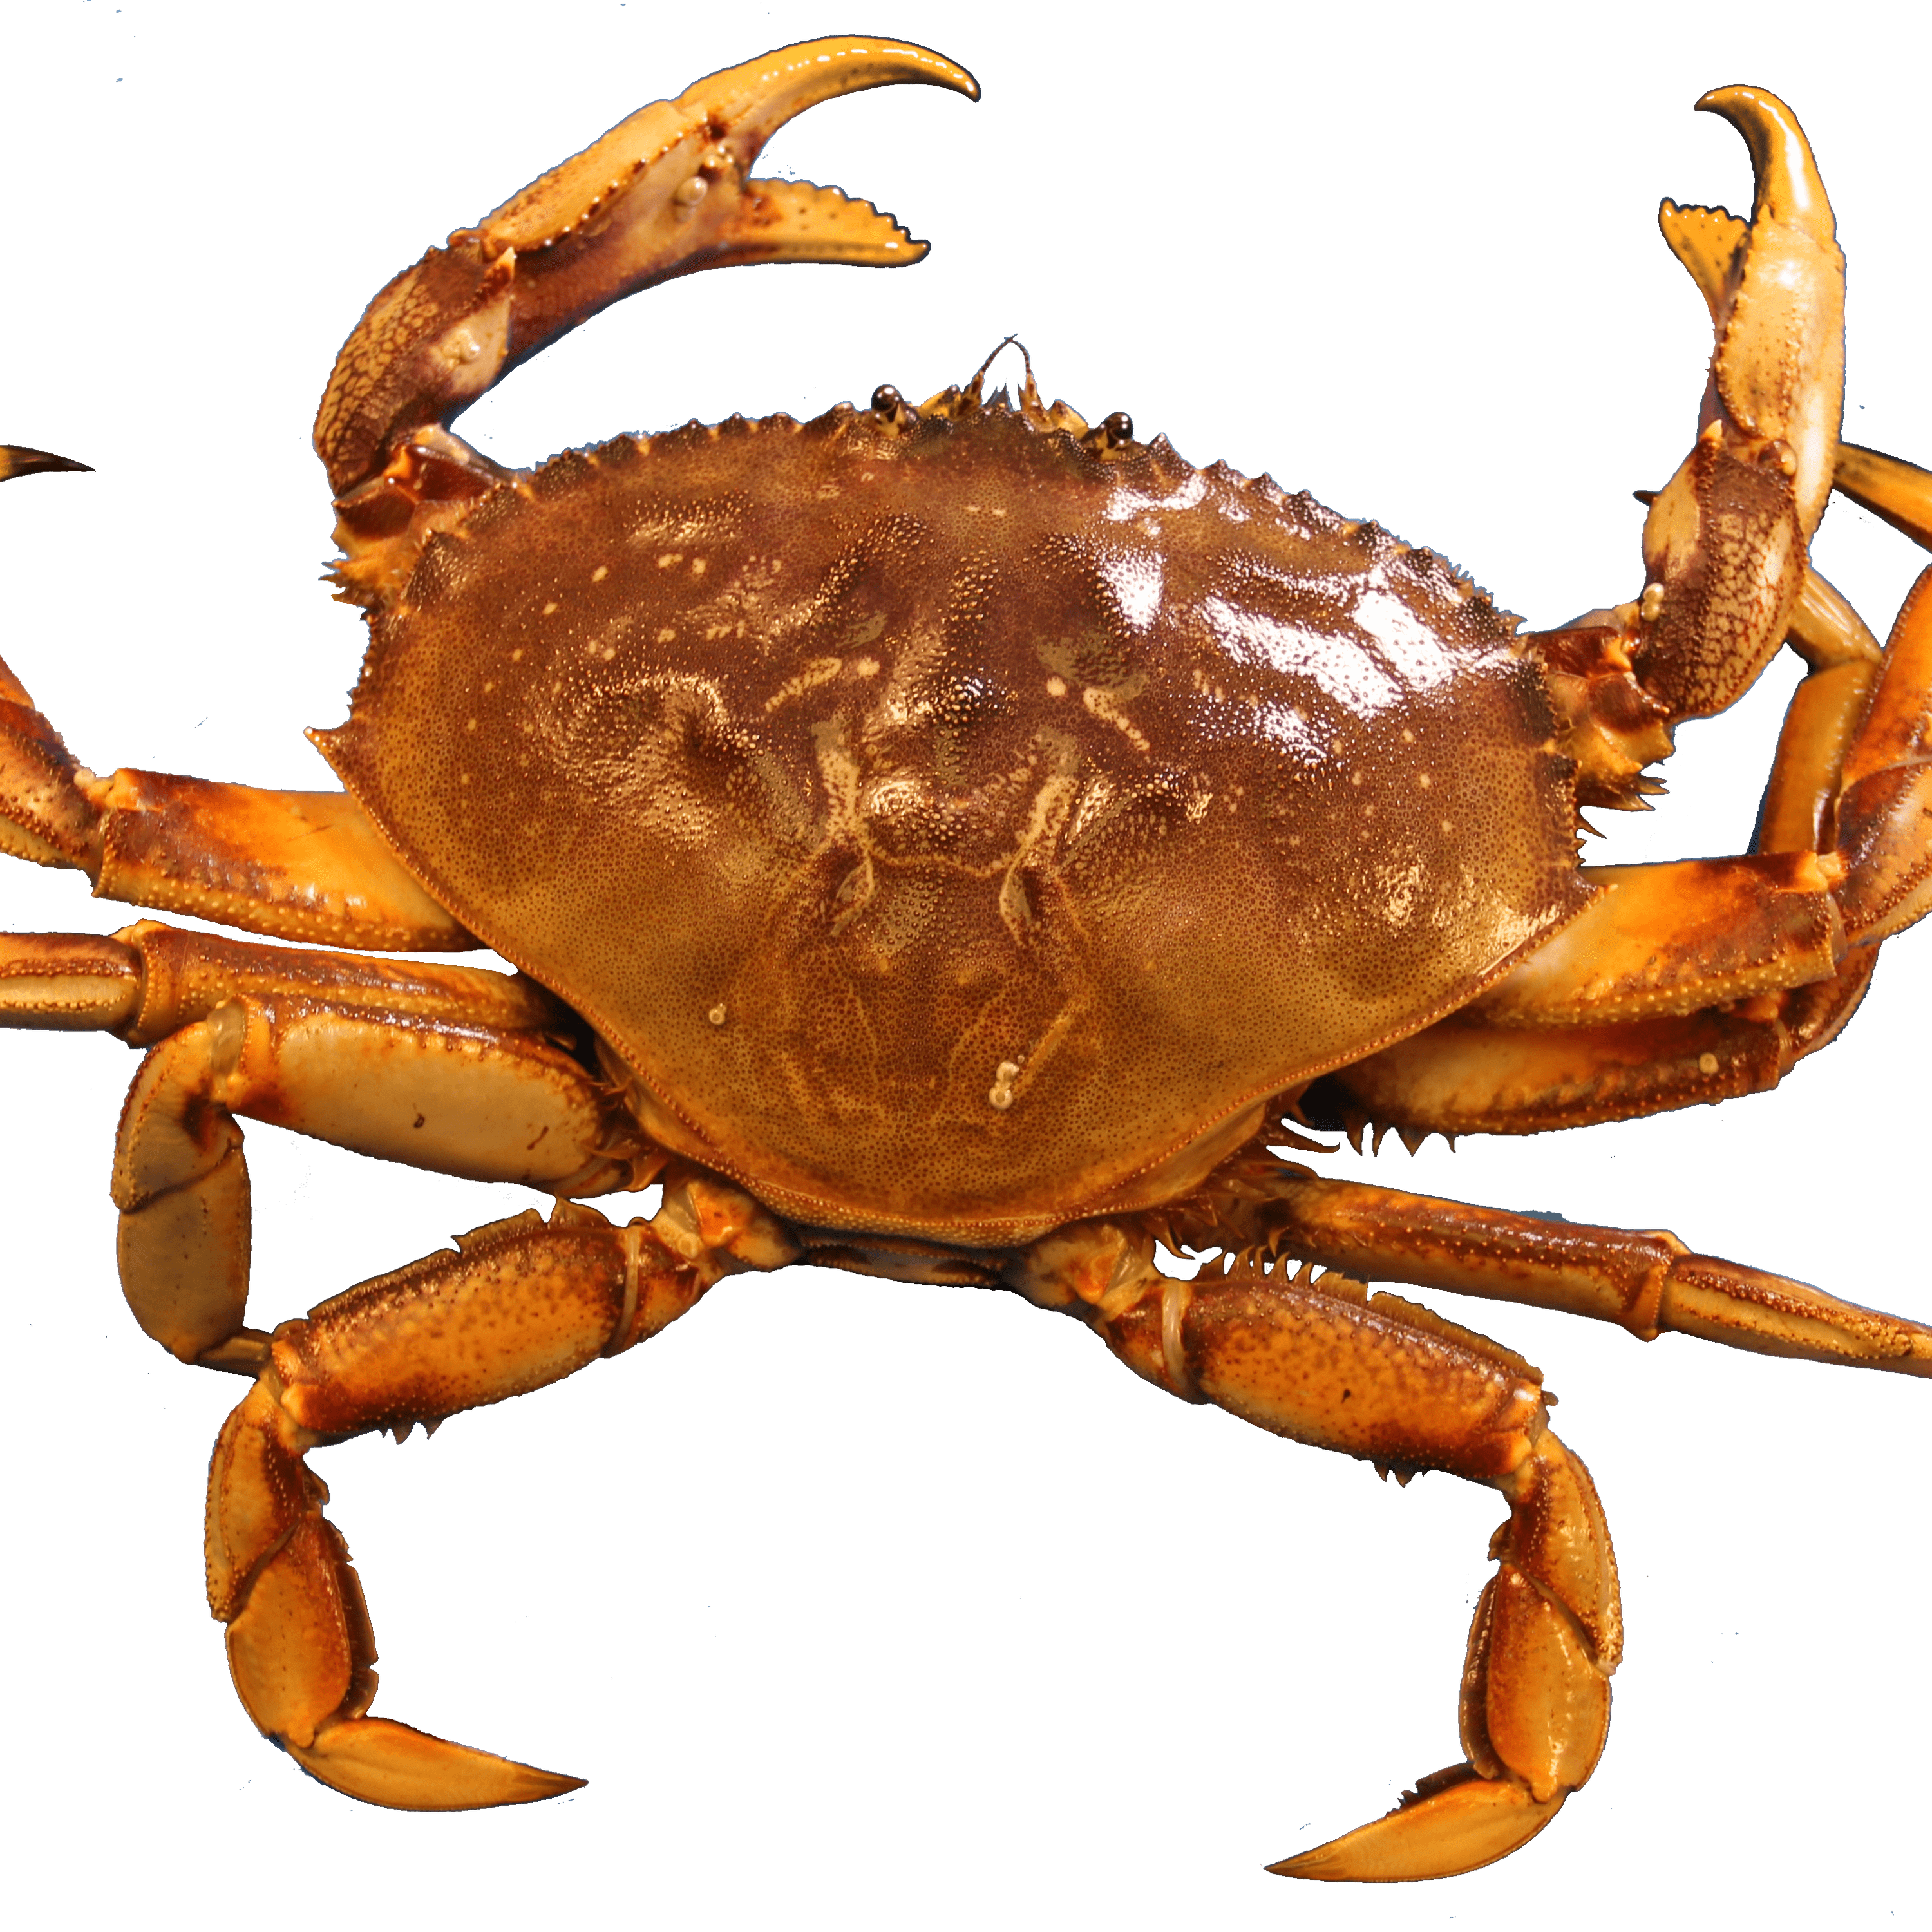 Crab PNG Clipart